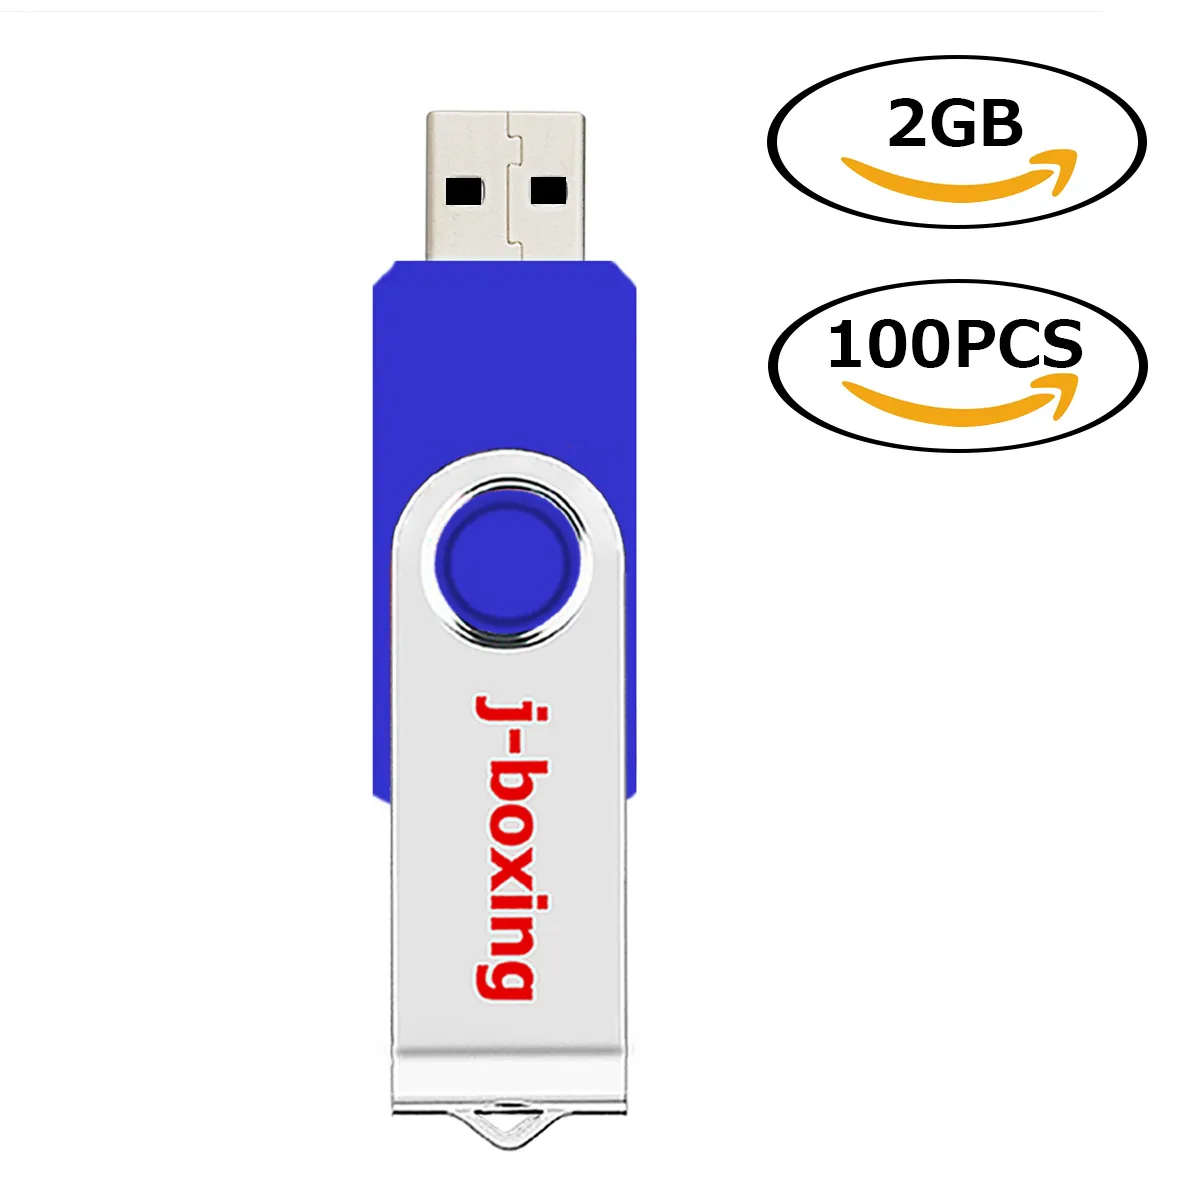 Atacado 100pcs 2 GB de unidades flash USB METAL SPLASSE MEMÓRIA FLASH MEMÓRIA PARA PAR